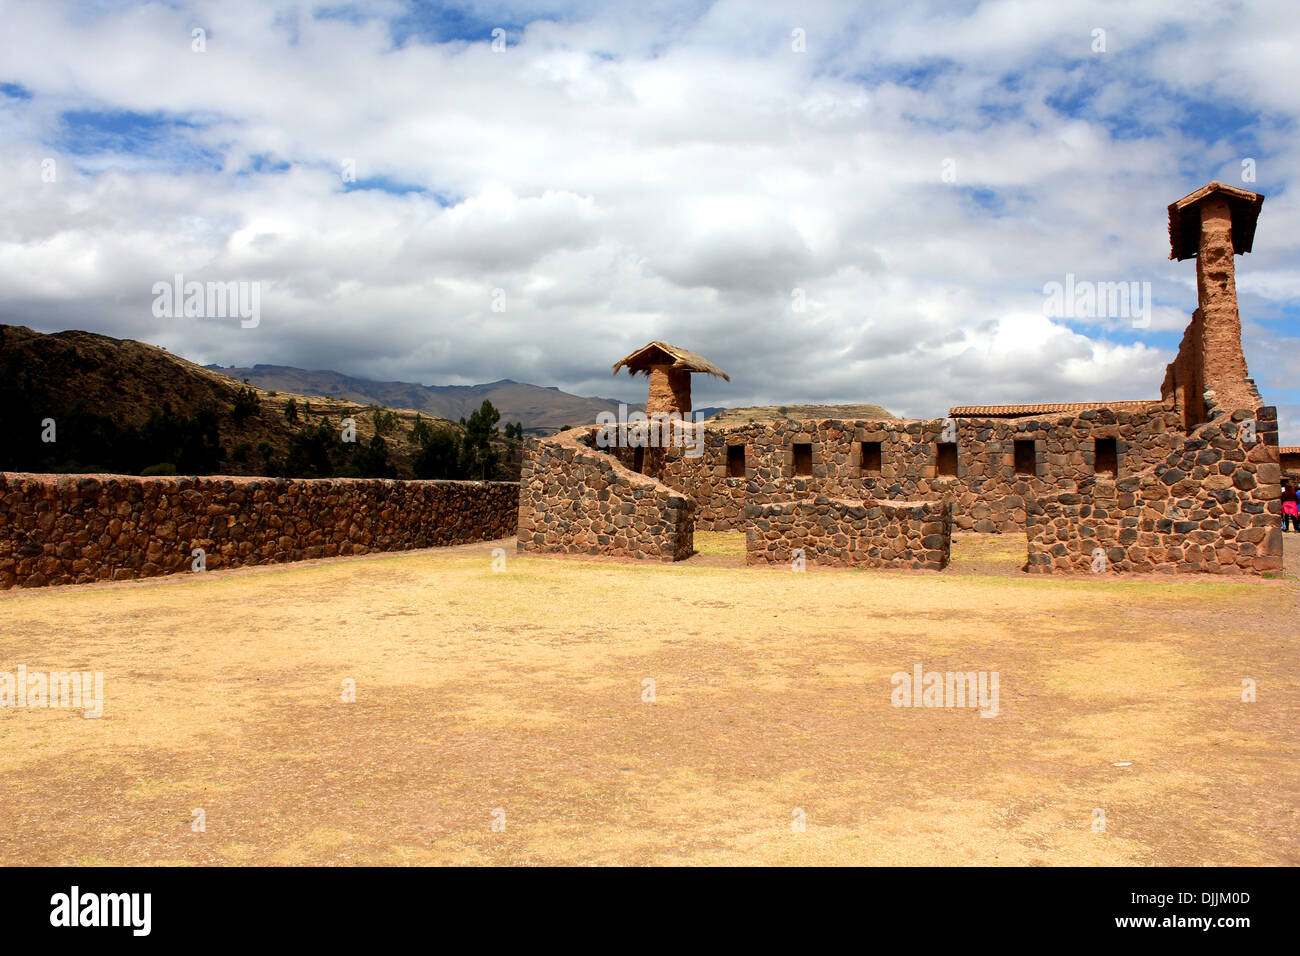 Raqchi Inca ruins in Peru Stock Photo